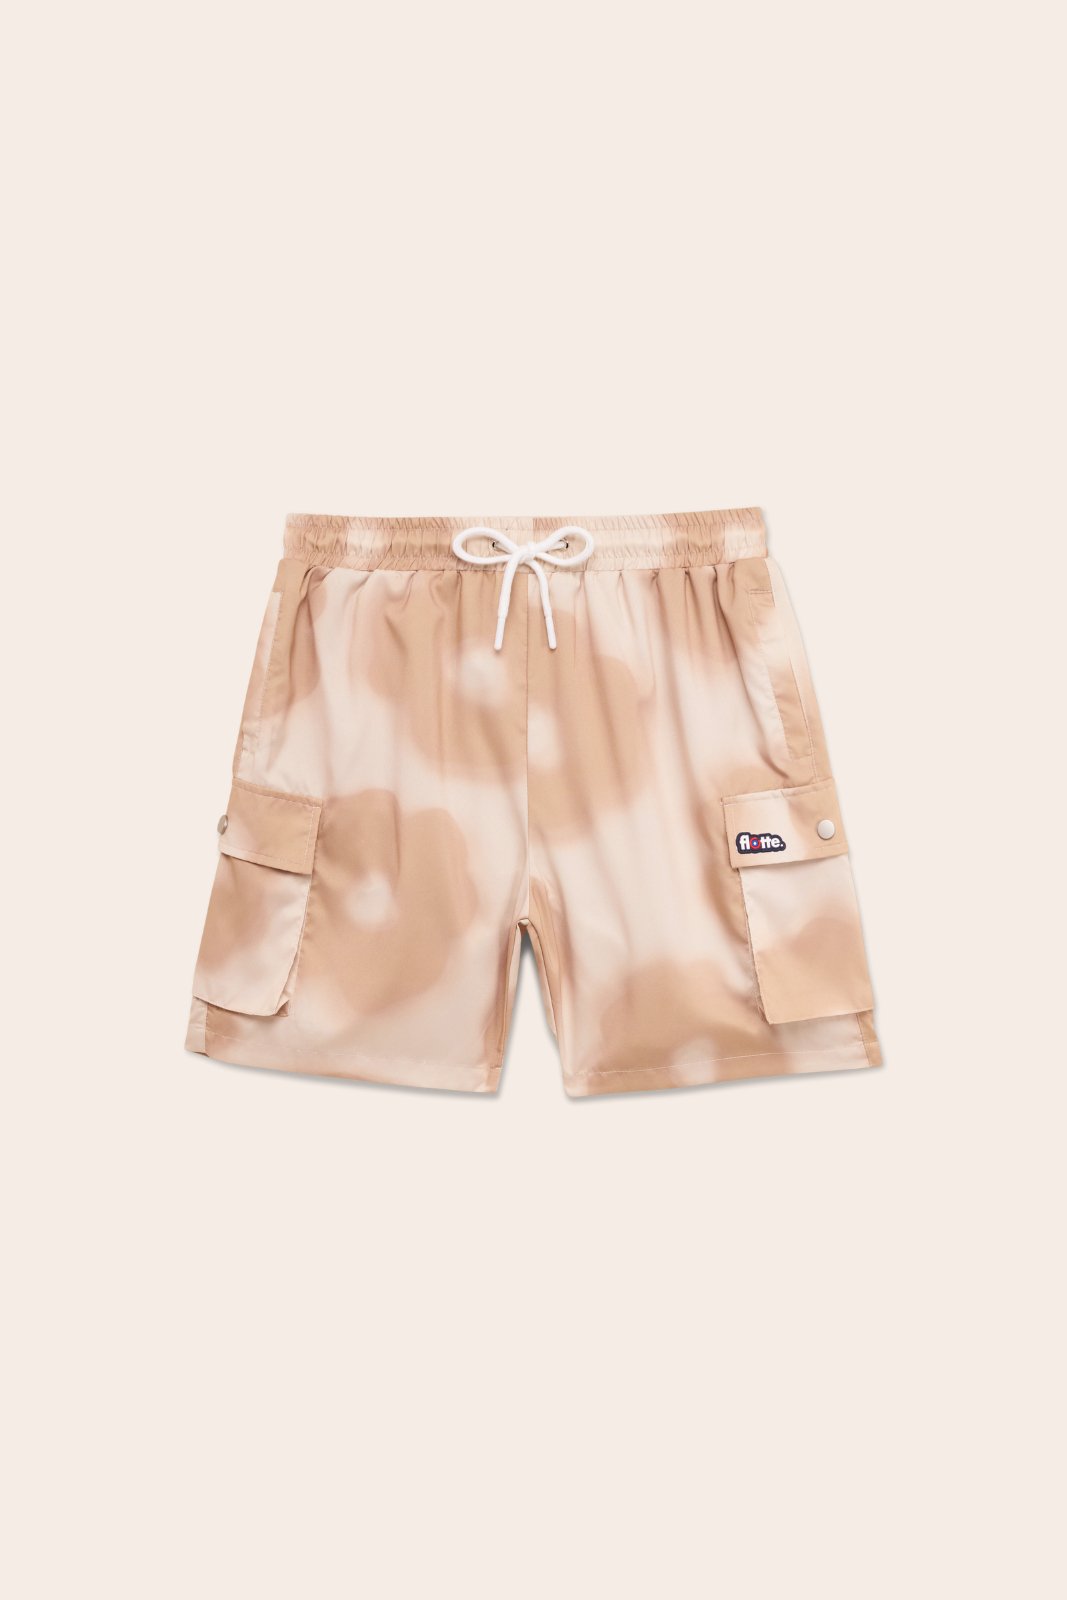 Saint Louis - Swimsuit shorts - Flotte #couleur_daisy